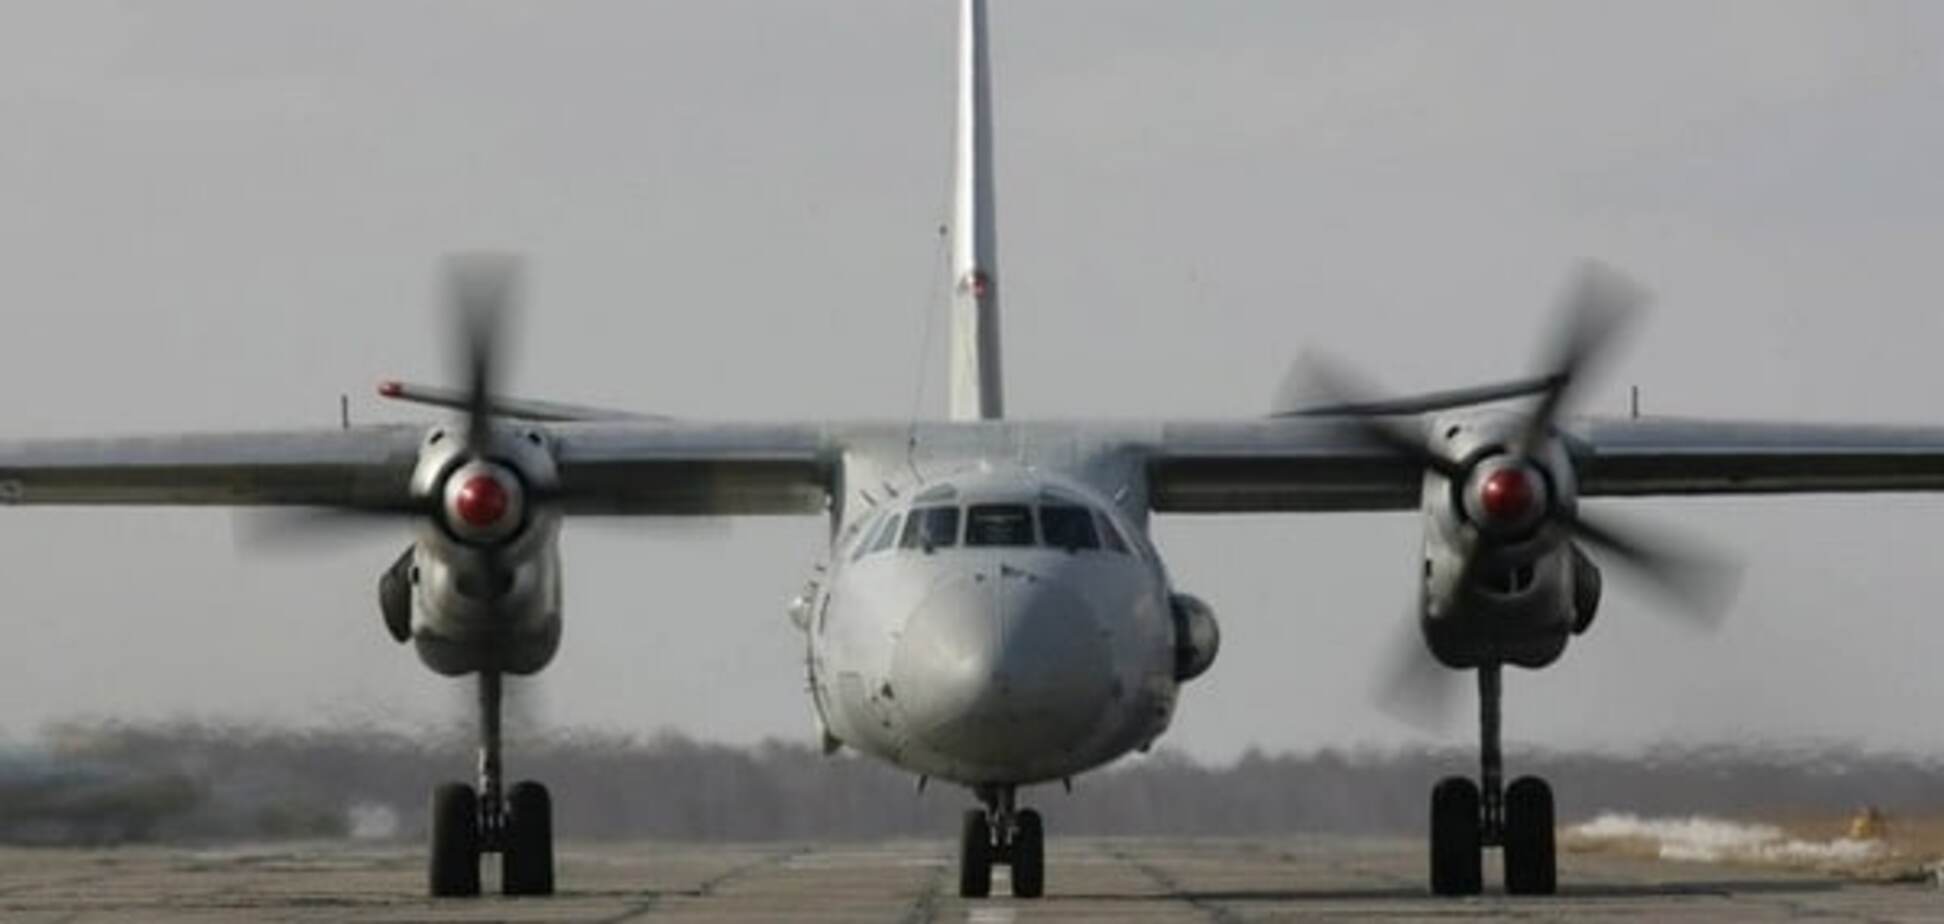 Разбившийся в Бангладеш самолет принадлежал украинской компании